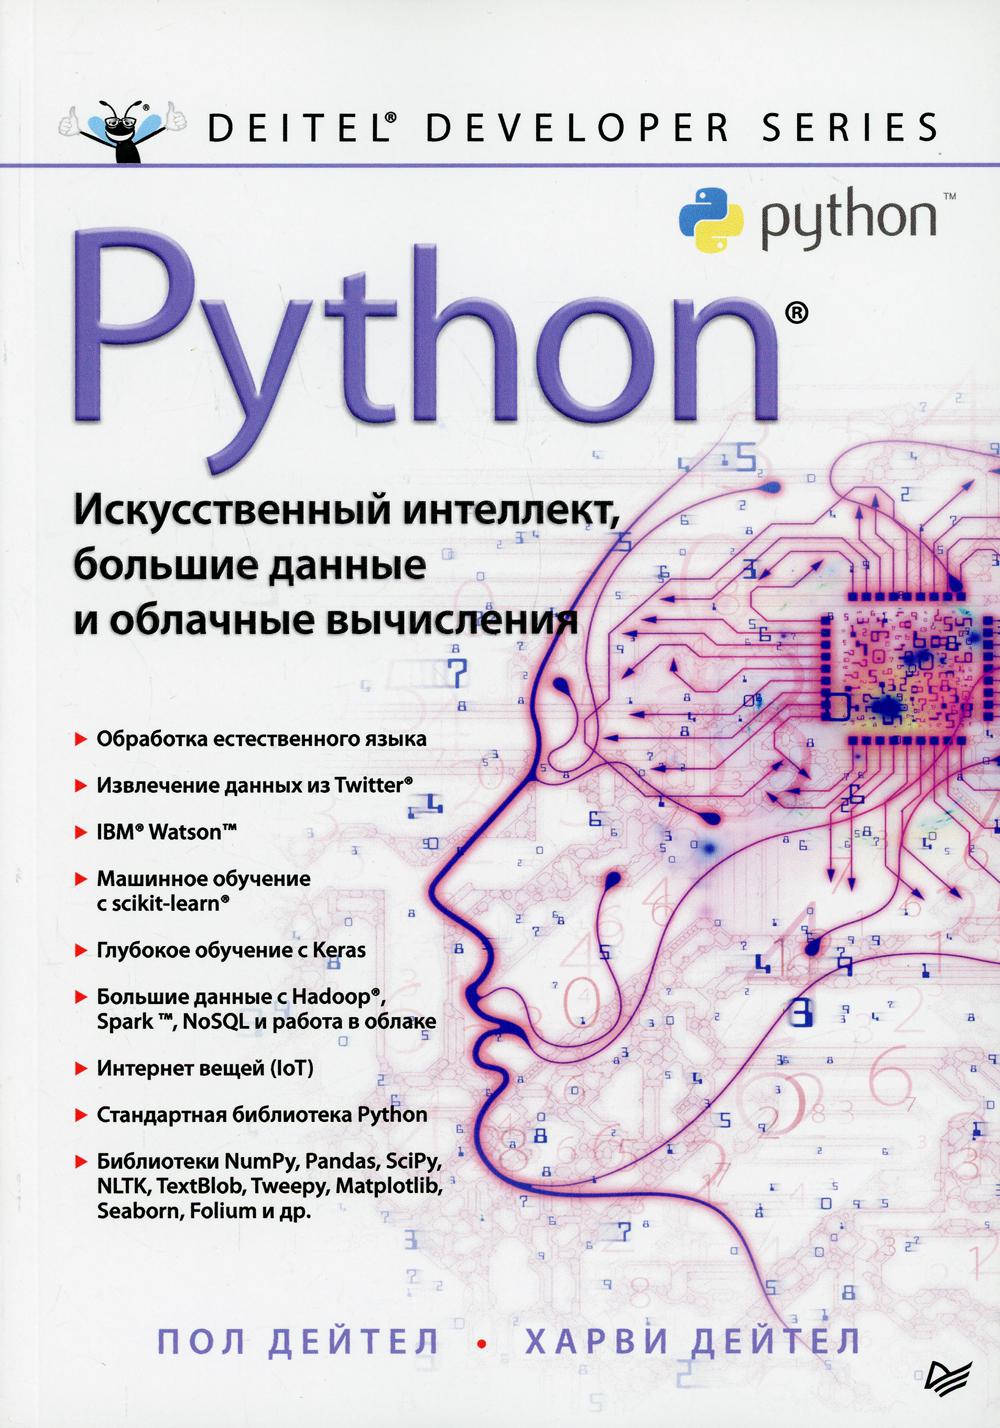 Python: Искусственный интеллект, большие данные и облачные вычисления